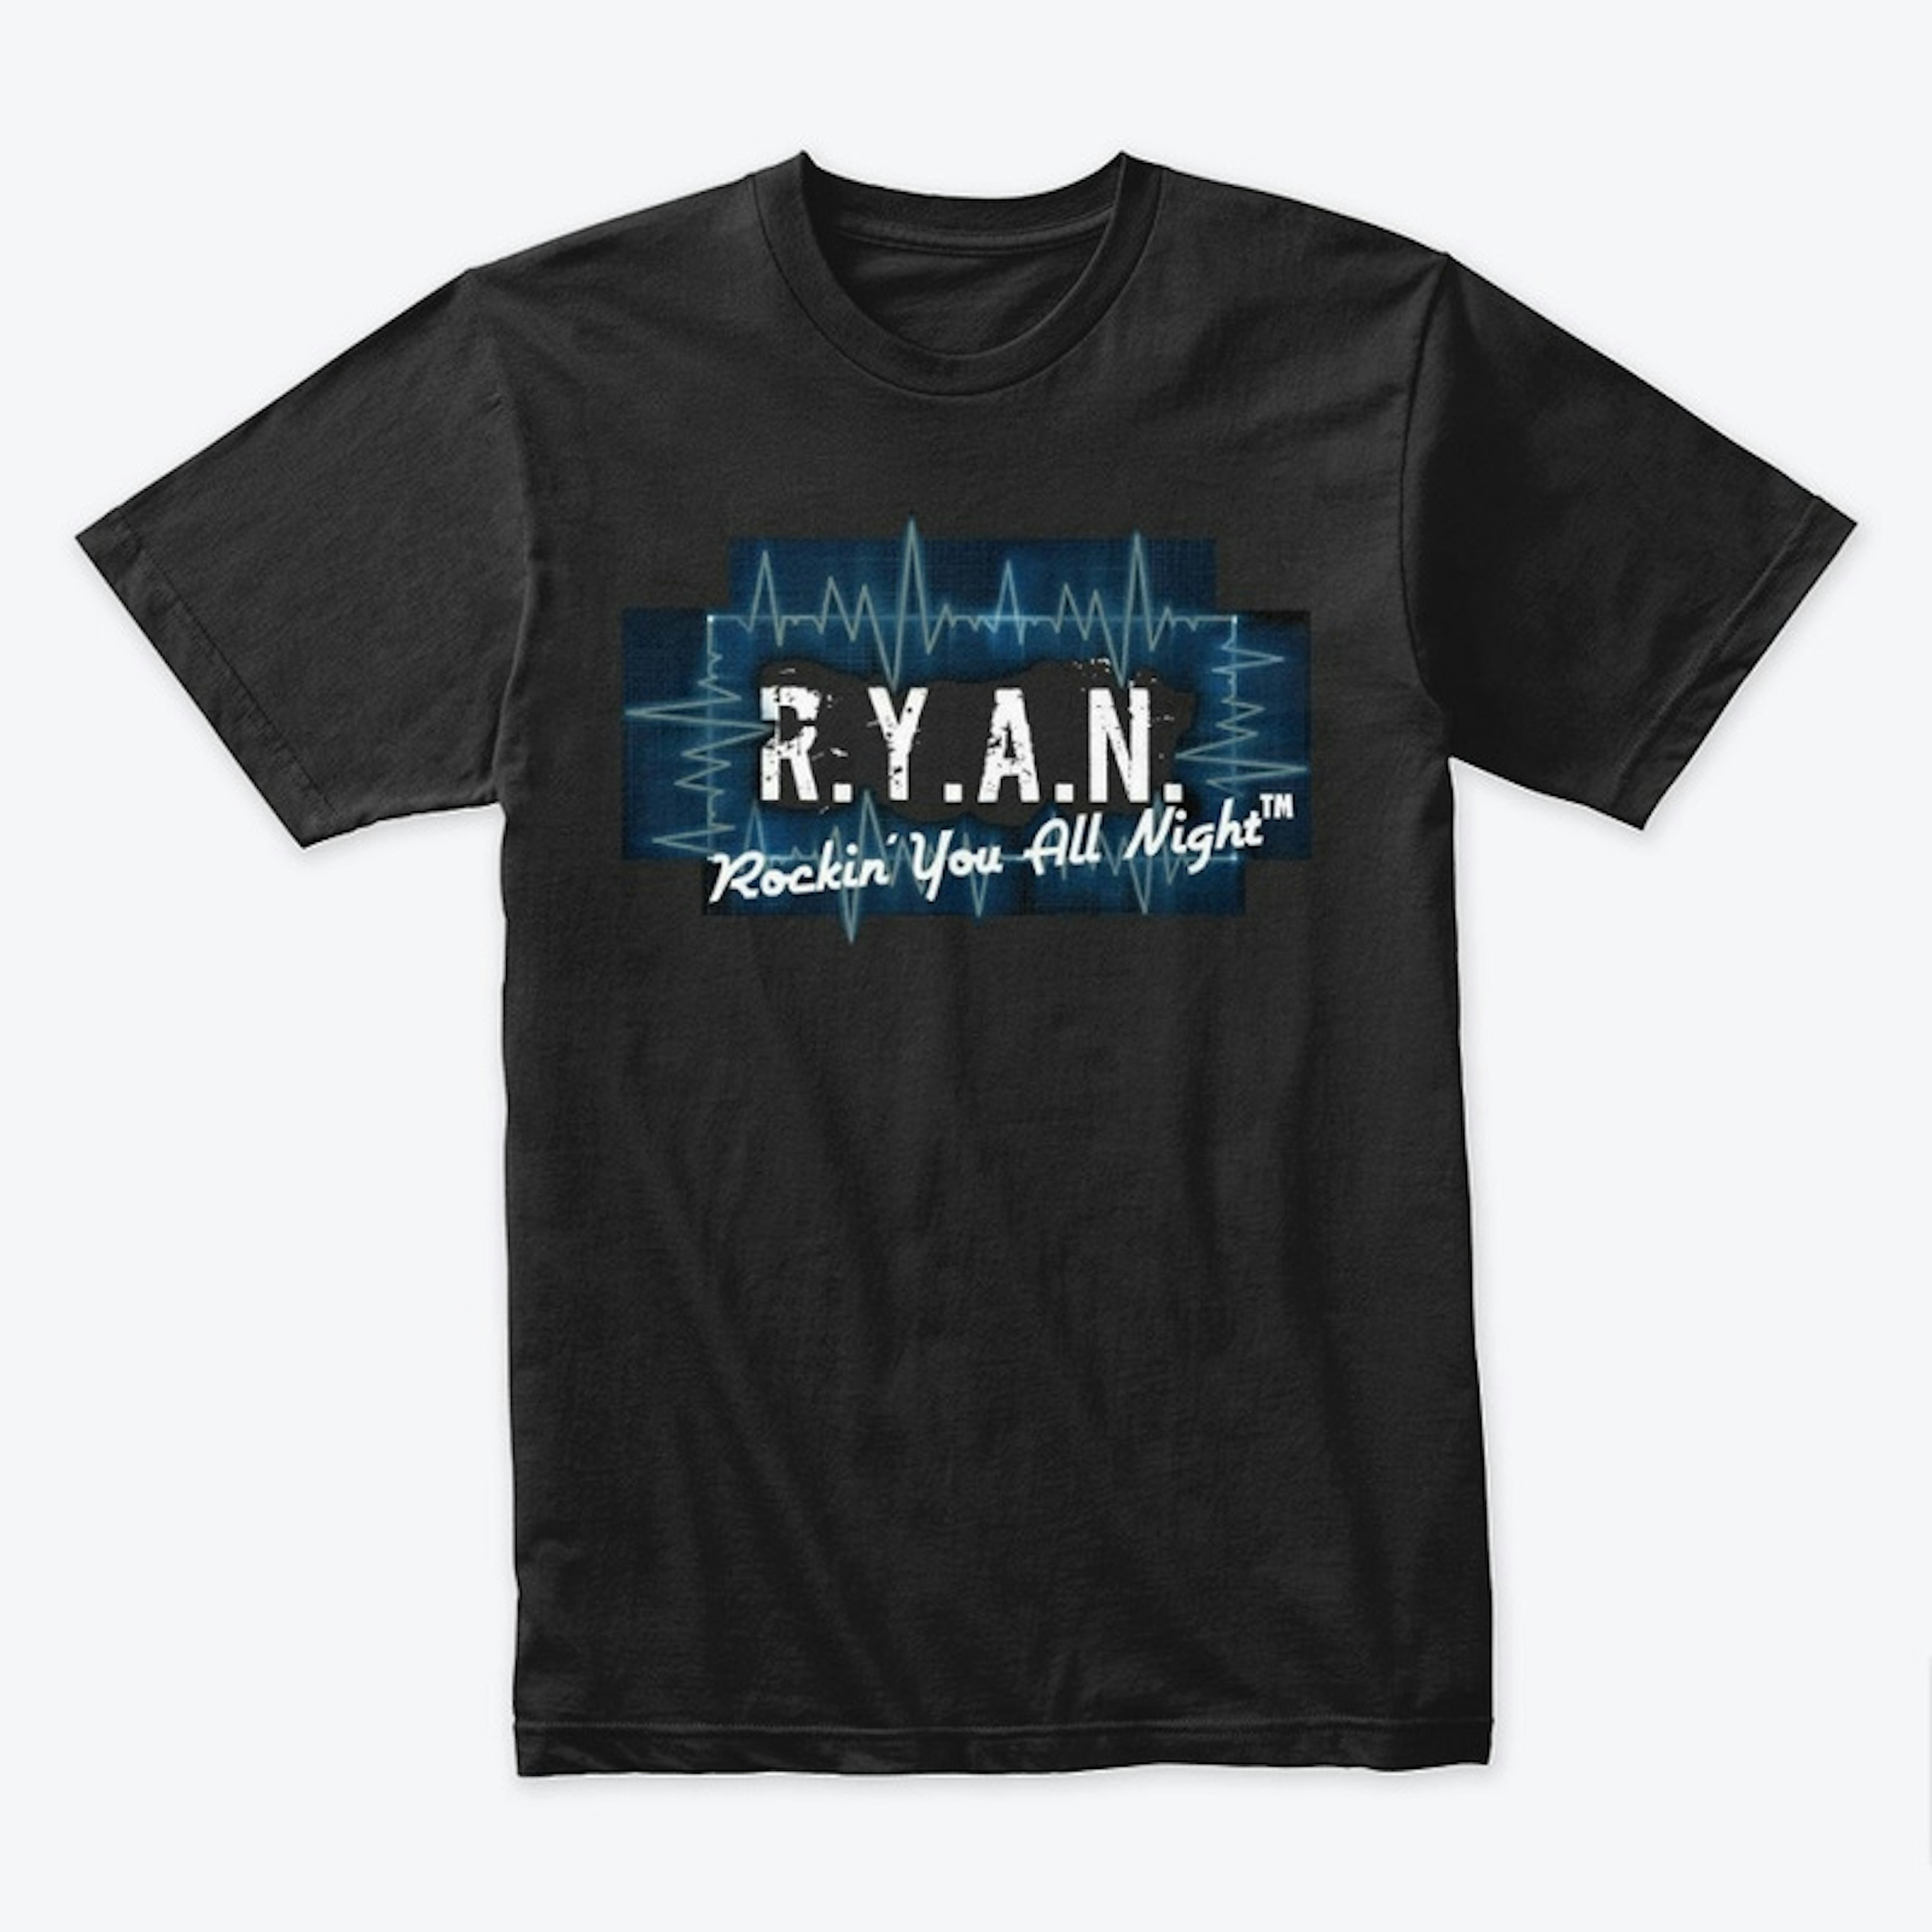 R.Y.A.N. ...GET YA' SOME! Tee-Shirt